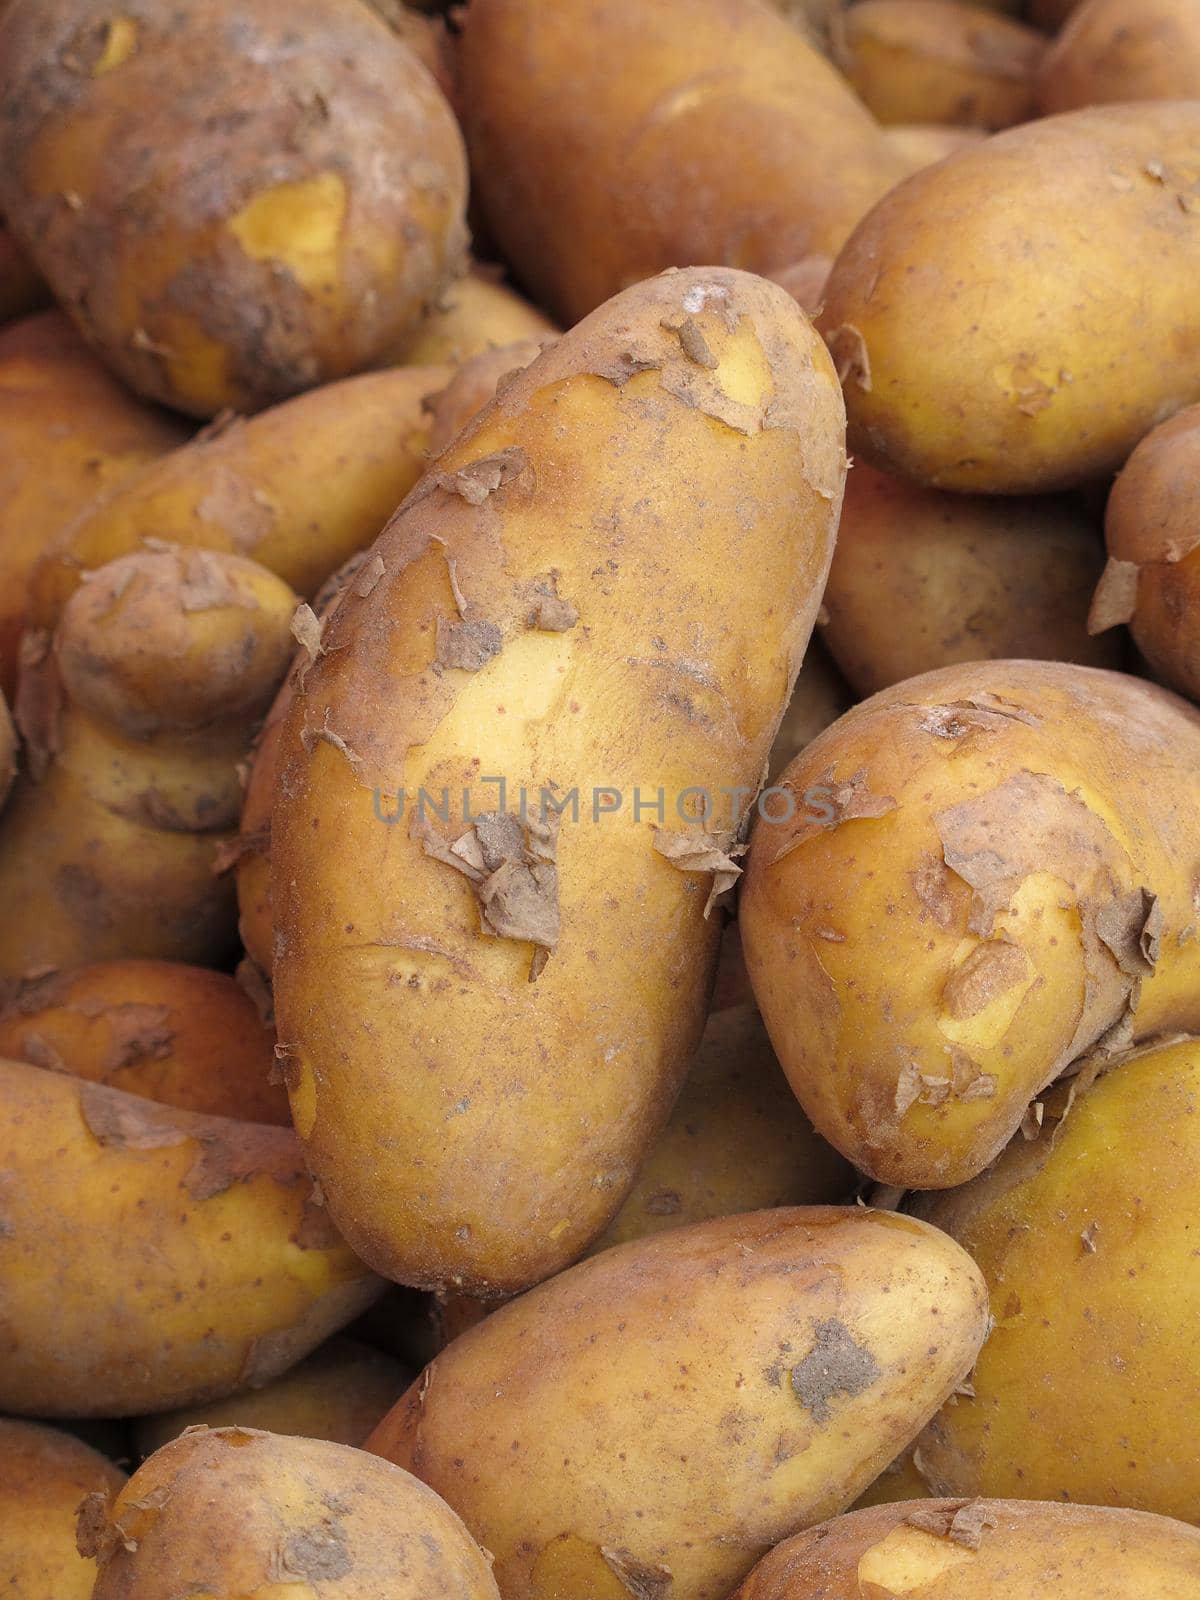 Many potatoes on a farmer's market